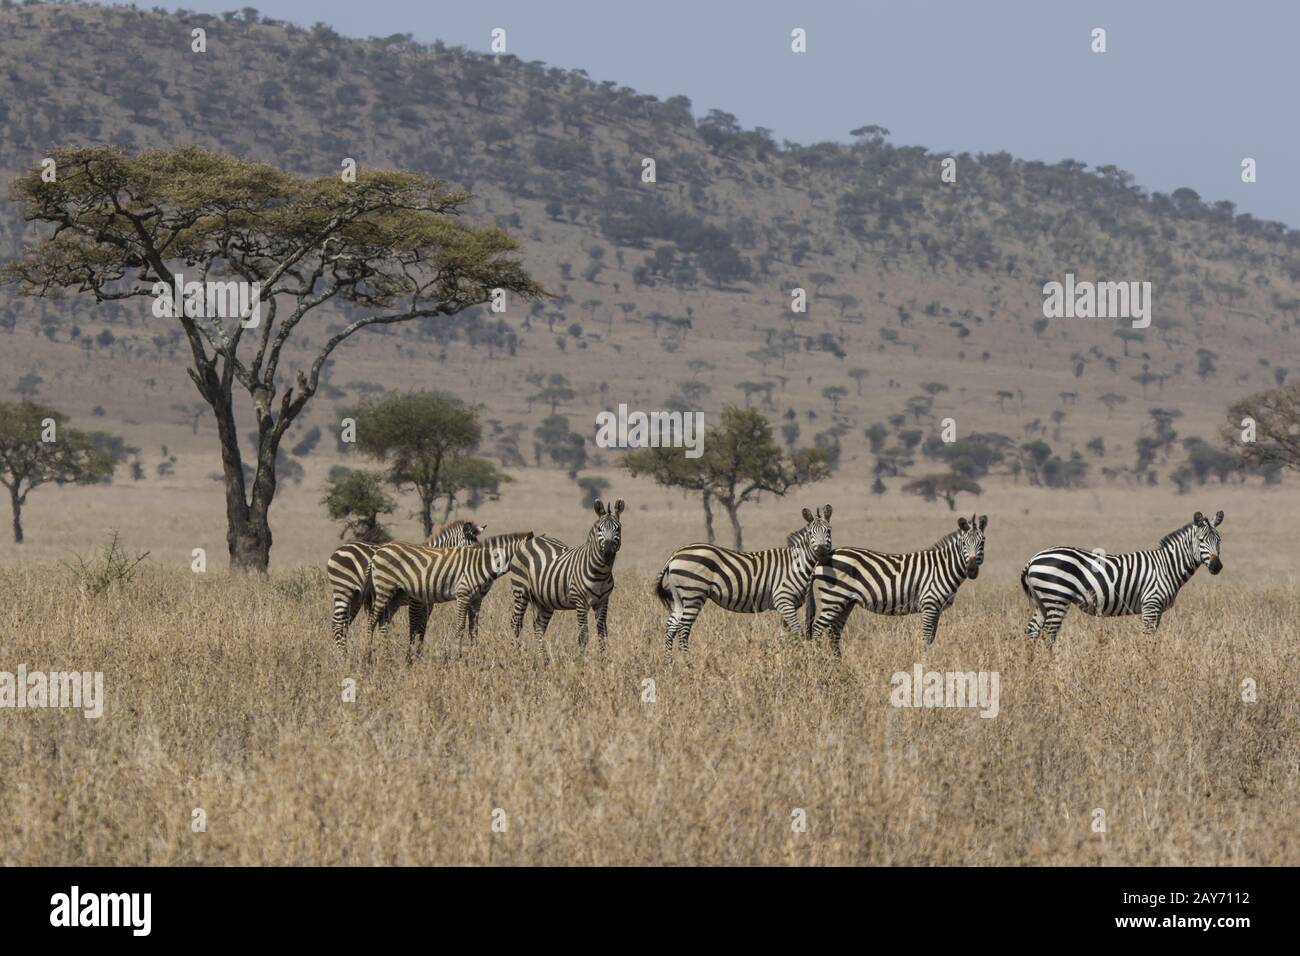 Betonung der Familie Gruppe von Zebras in der Savanne in der Nähe von Acacia auf einem heißen schwülen Tag stehend Stockfoto